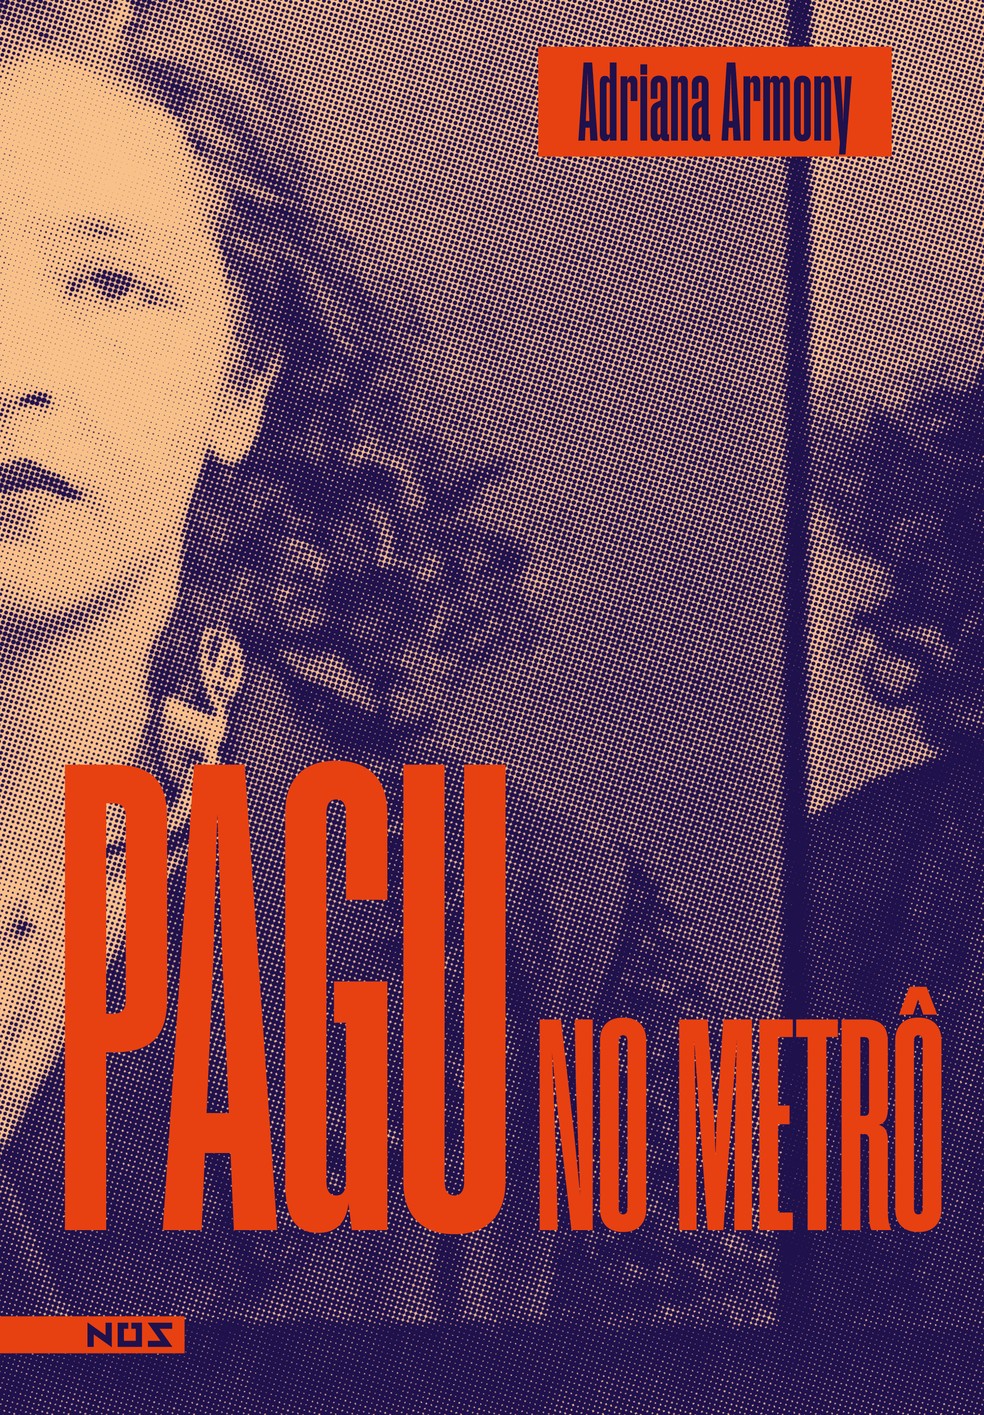 Capa de "Pagu no metrô", livro da escritora Adriana Armony publicado pela Nós — Foto: Reprodução